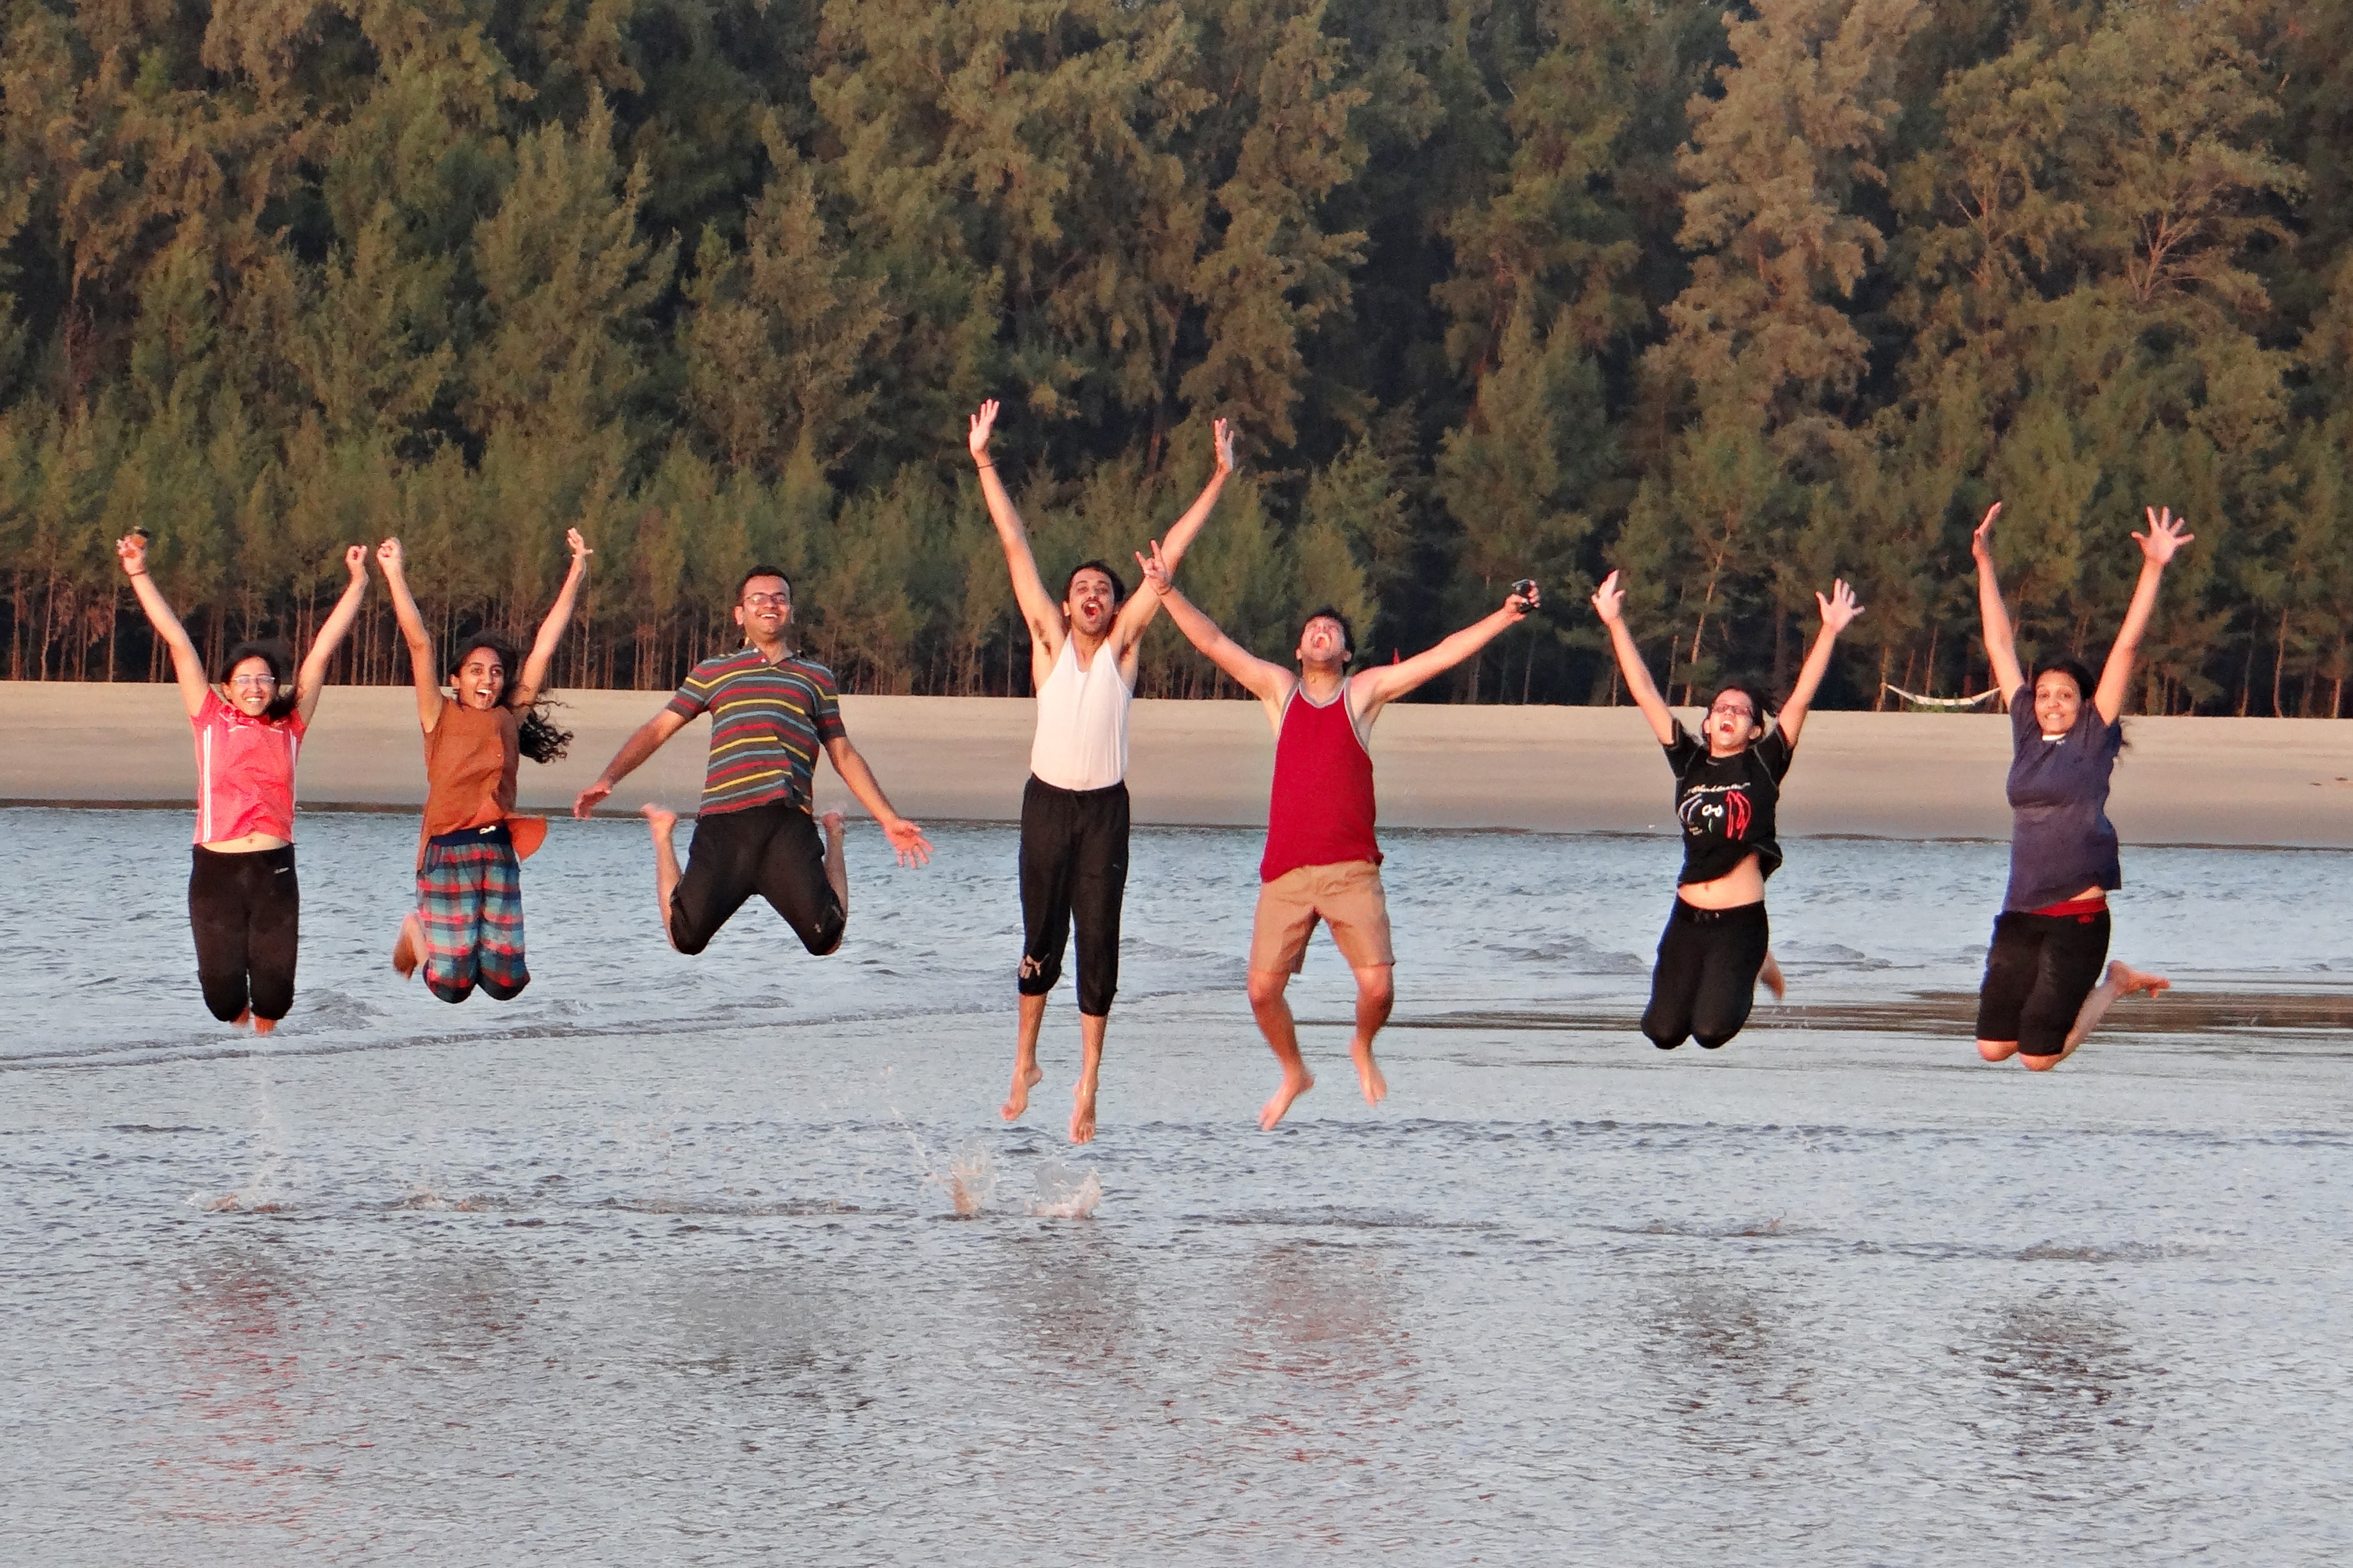 La imagen muestra varias personas saltando y con los brazos levantados muy felices